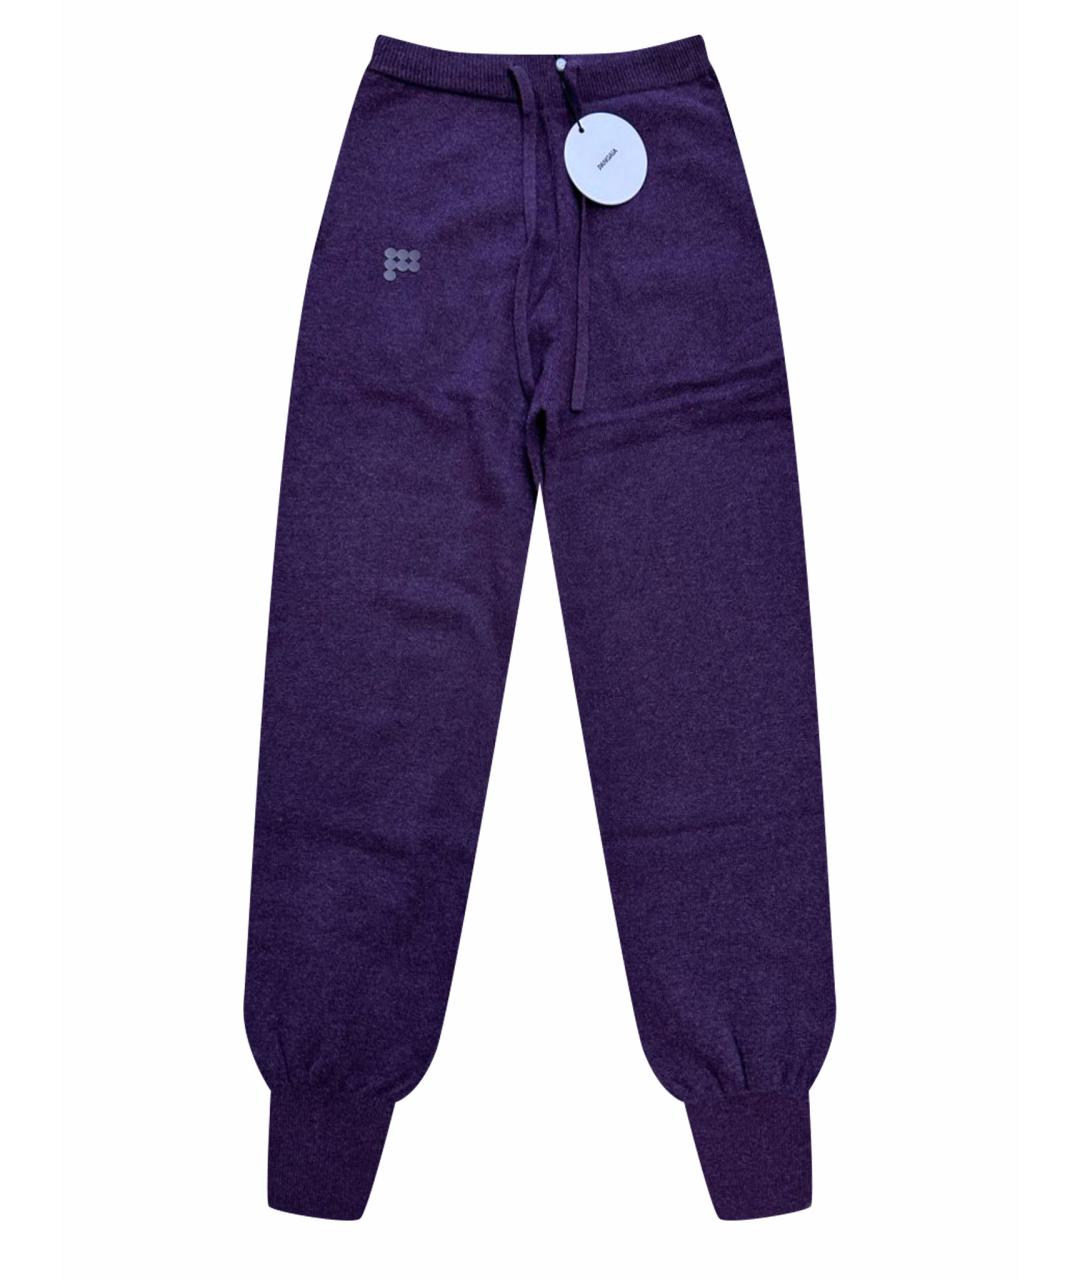 THE PANGAIA Фиолетовые кашемировые спортивные брюки и шорты, фото 1